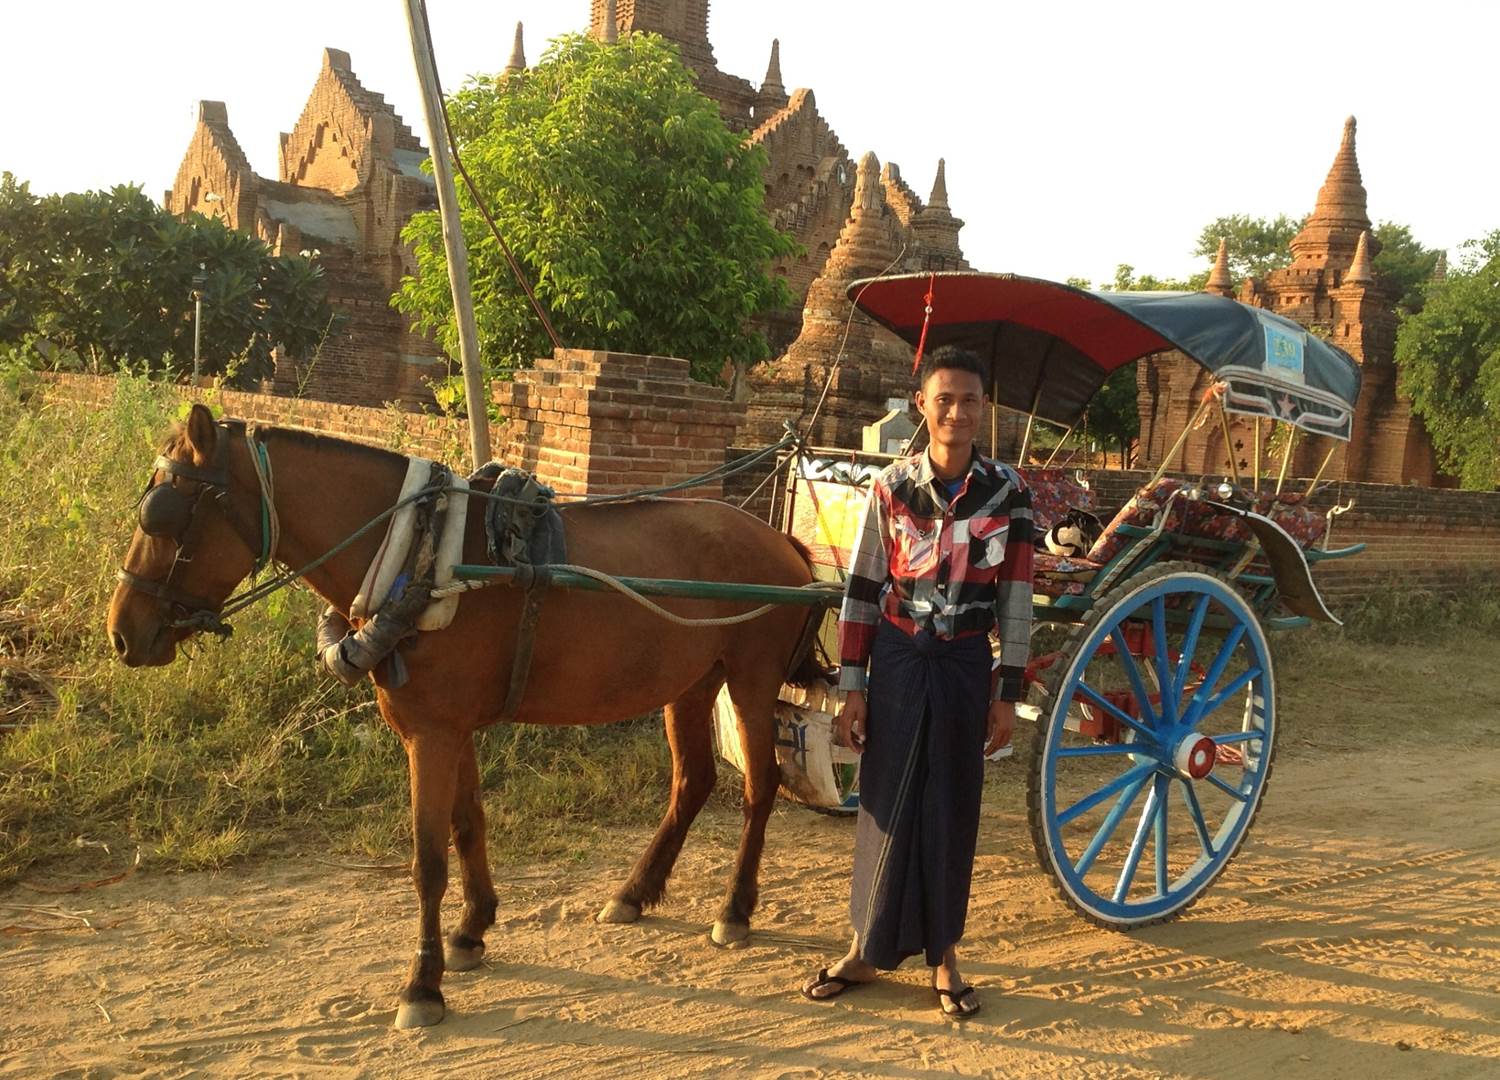 A horsecart for Naing Naing from Bangan (Burma / Myanmar)